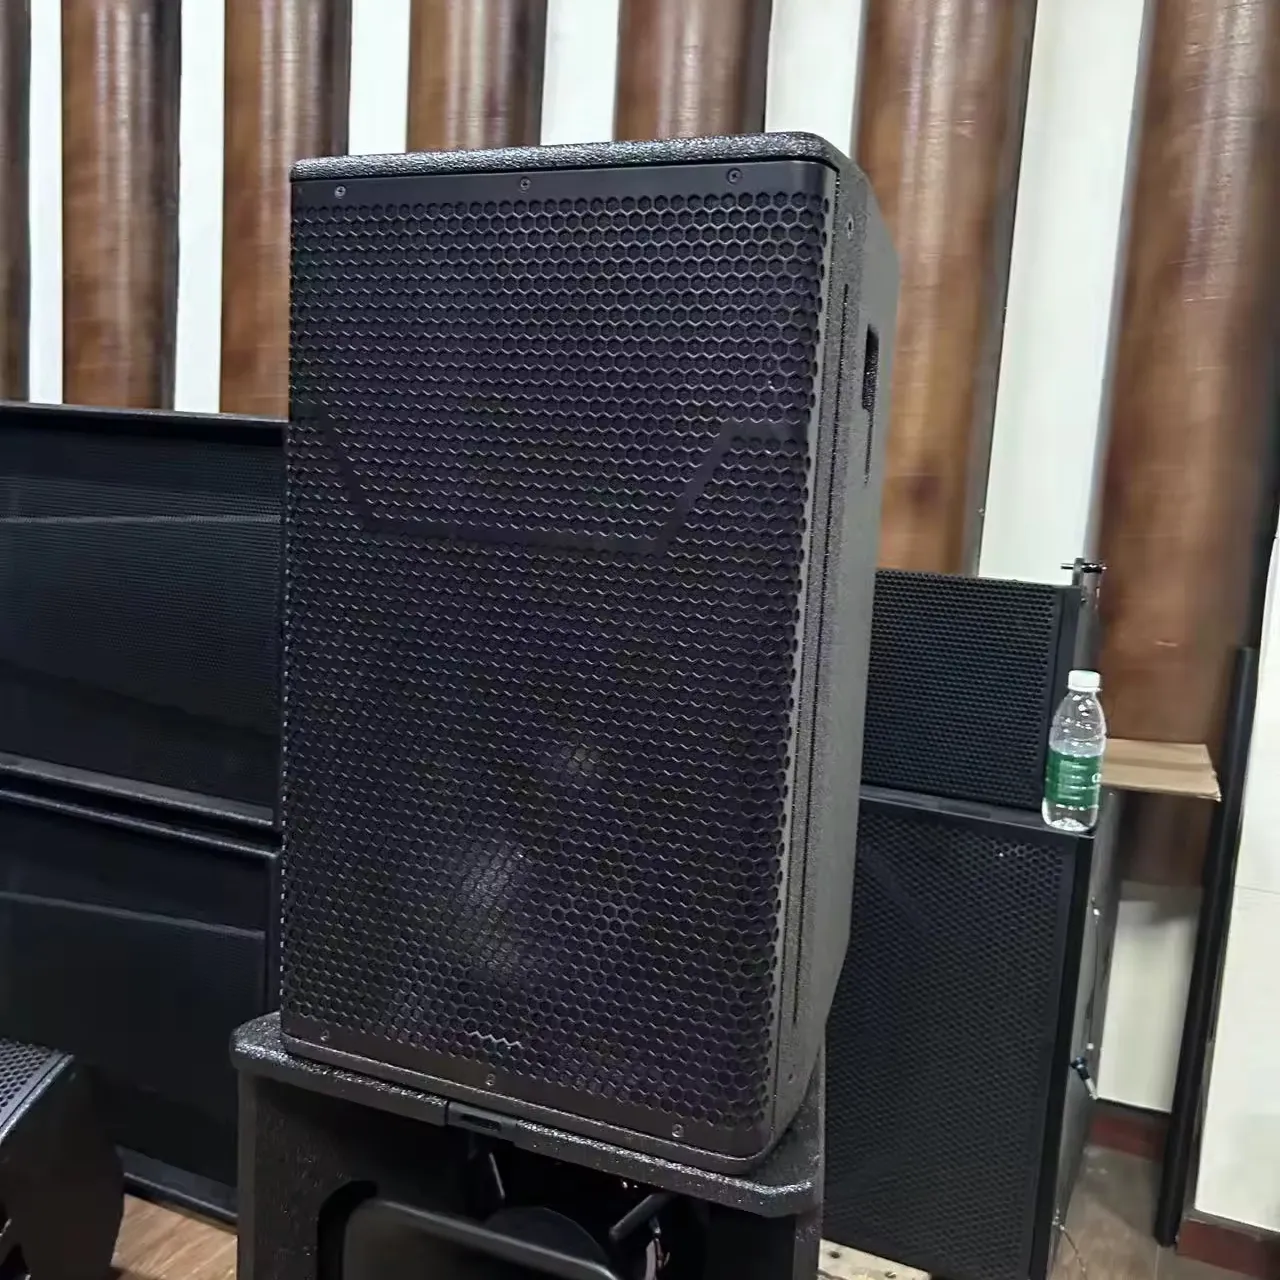 Sistema de som profissional para DJ, sistema de som de madeira compensada com motor de gama completa, alto-falante de neodímio de 12 polegadas para igreja